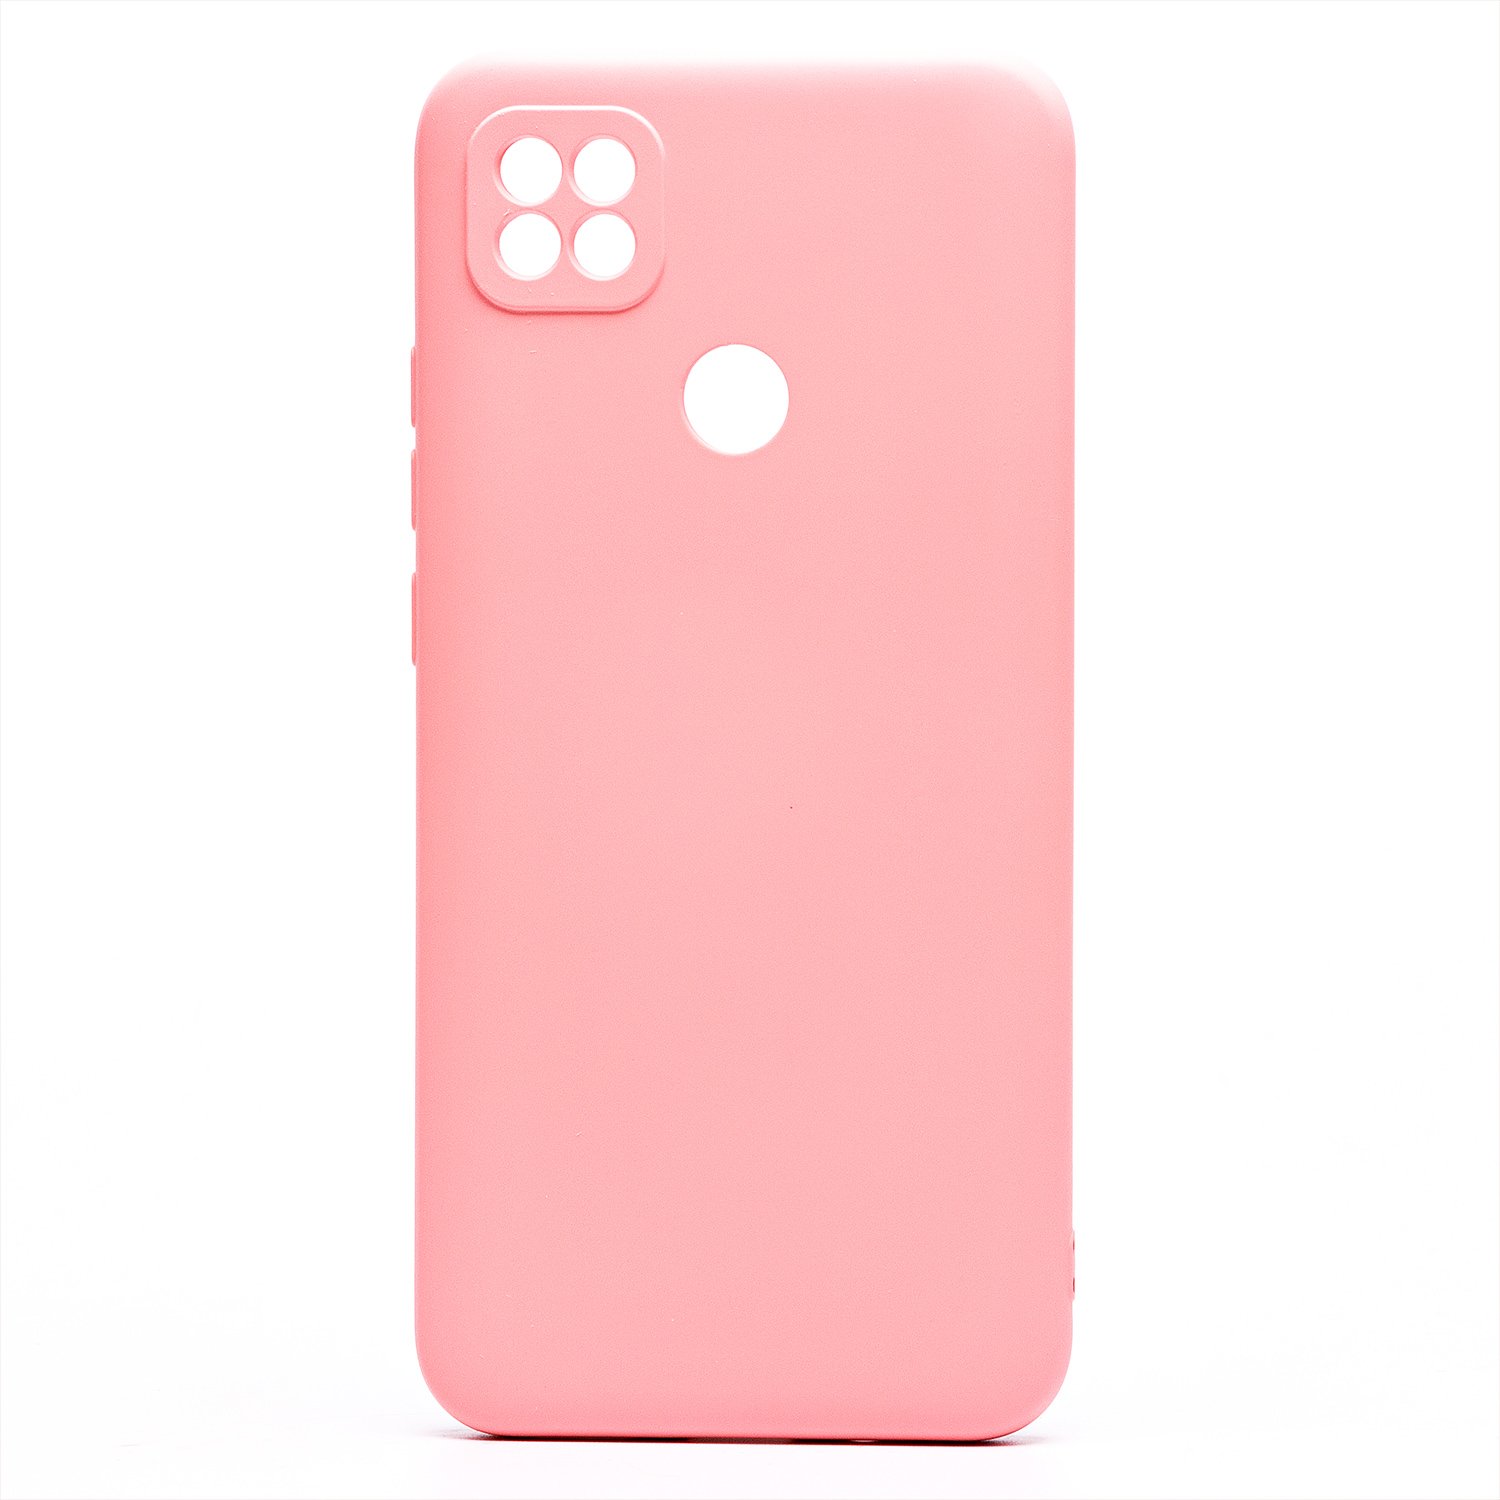 Чехол-накладка Activ Full Original Design для смартфона Xiaomi Redmi 10A, силикон, светло-розовый (209042)